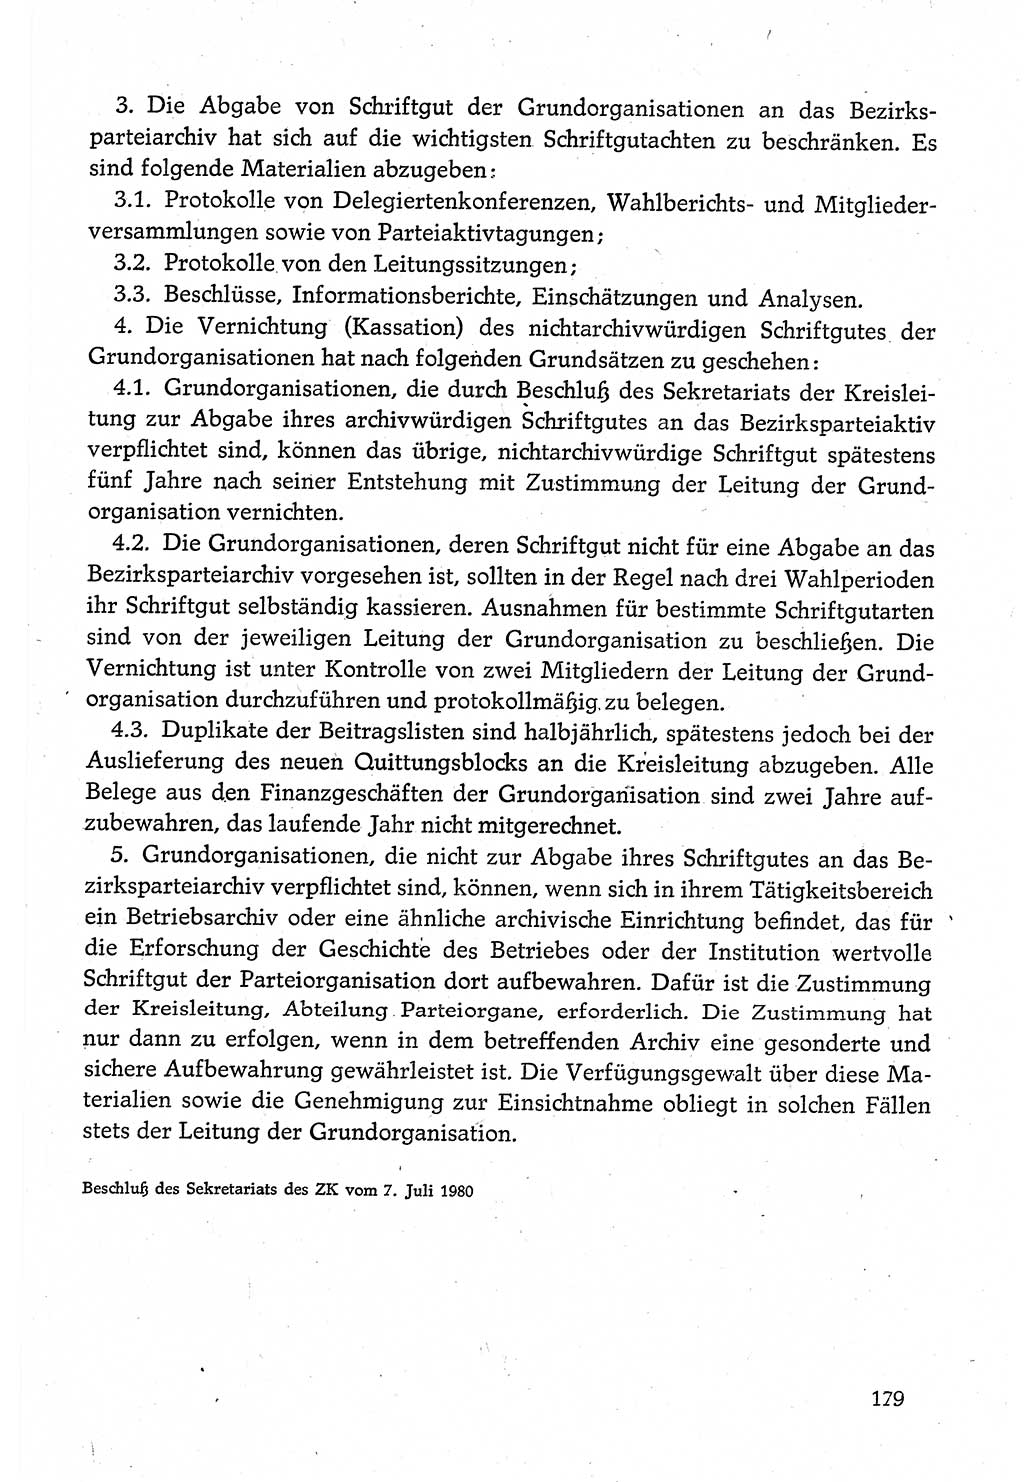 Dokumente der Sozialistischen Einheitspartei Deutschlands (SED) [Deutsche Demokratische Republik (DDR)] 1980-1981, Seite 179 (Dok. SED DDR 1980-1981, S. 179)